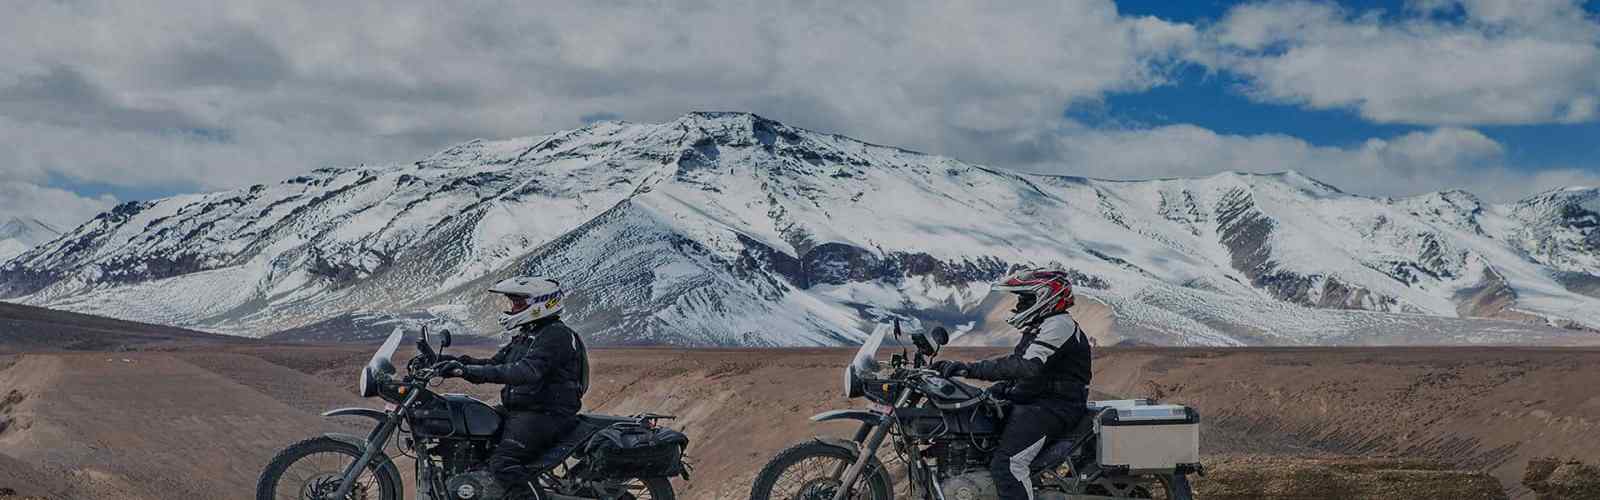 Suggestiva avventura in Nepal visto dalla sella di una moto 